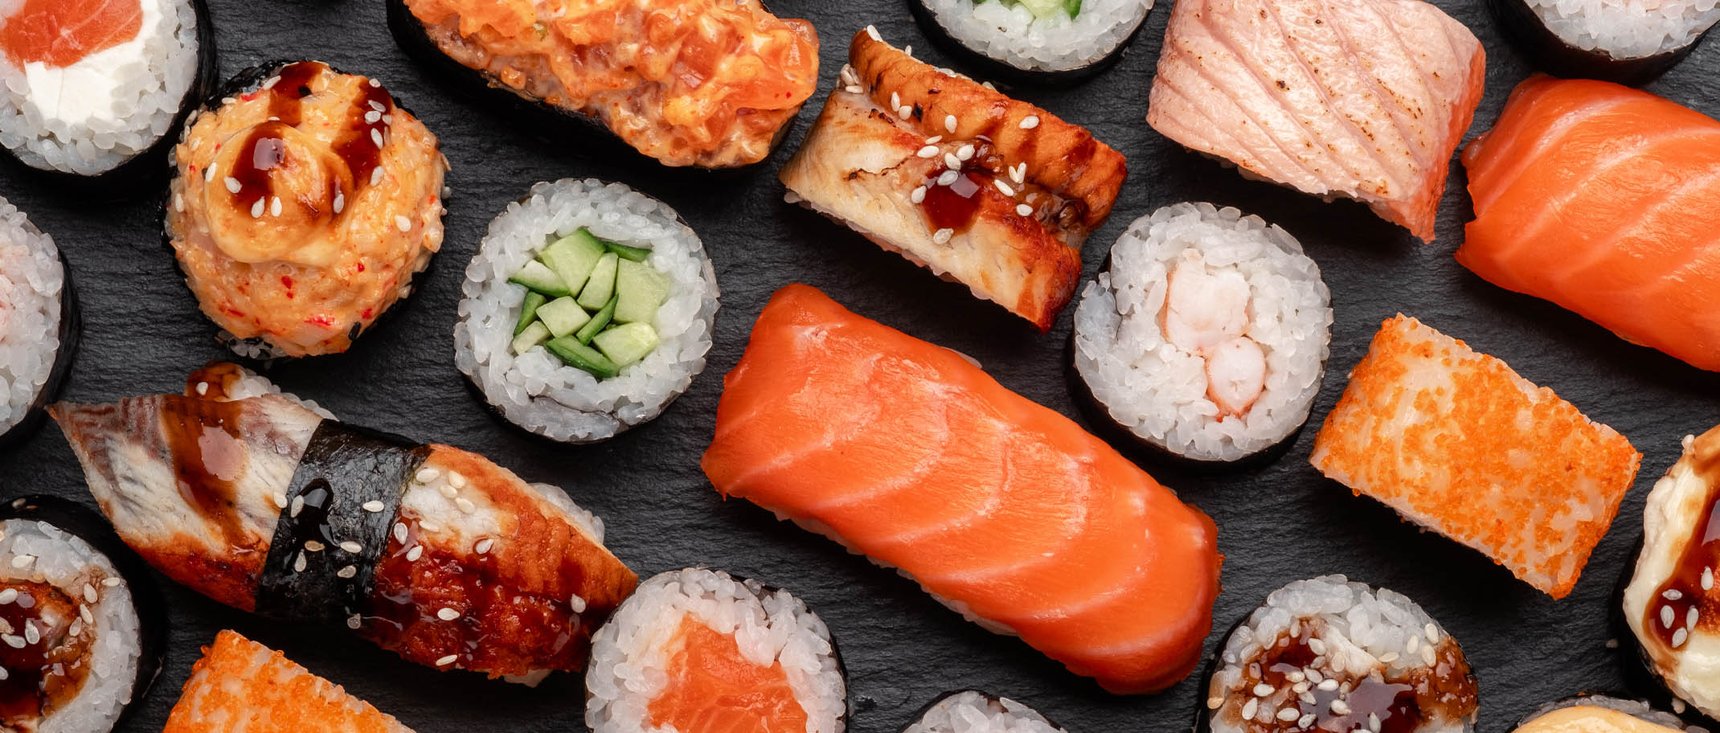 category-sushi-fisch-online-kaufen.jpg